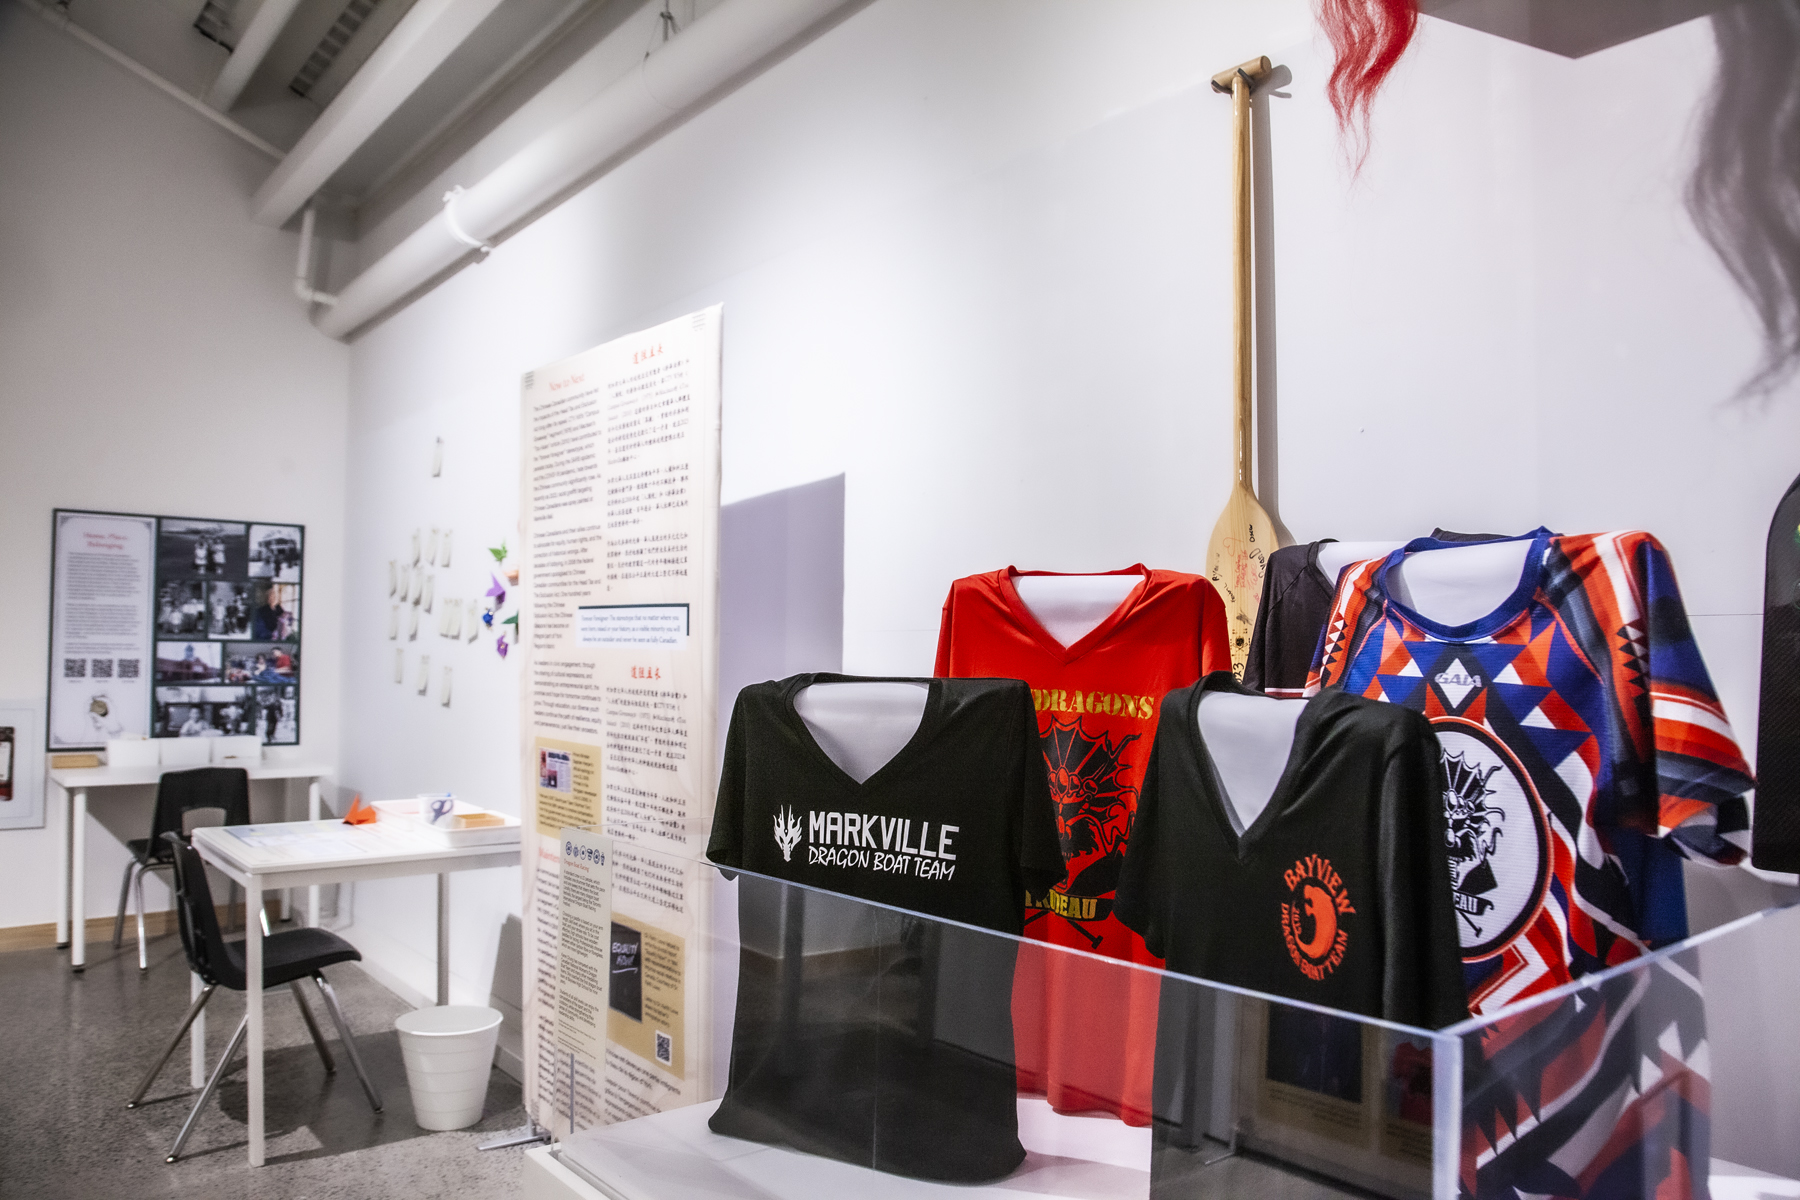 jerseys on display in museum exhibit